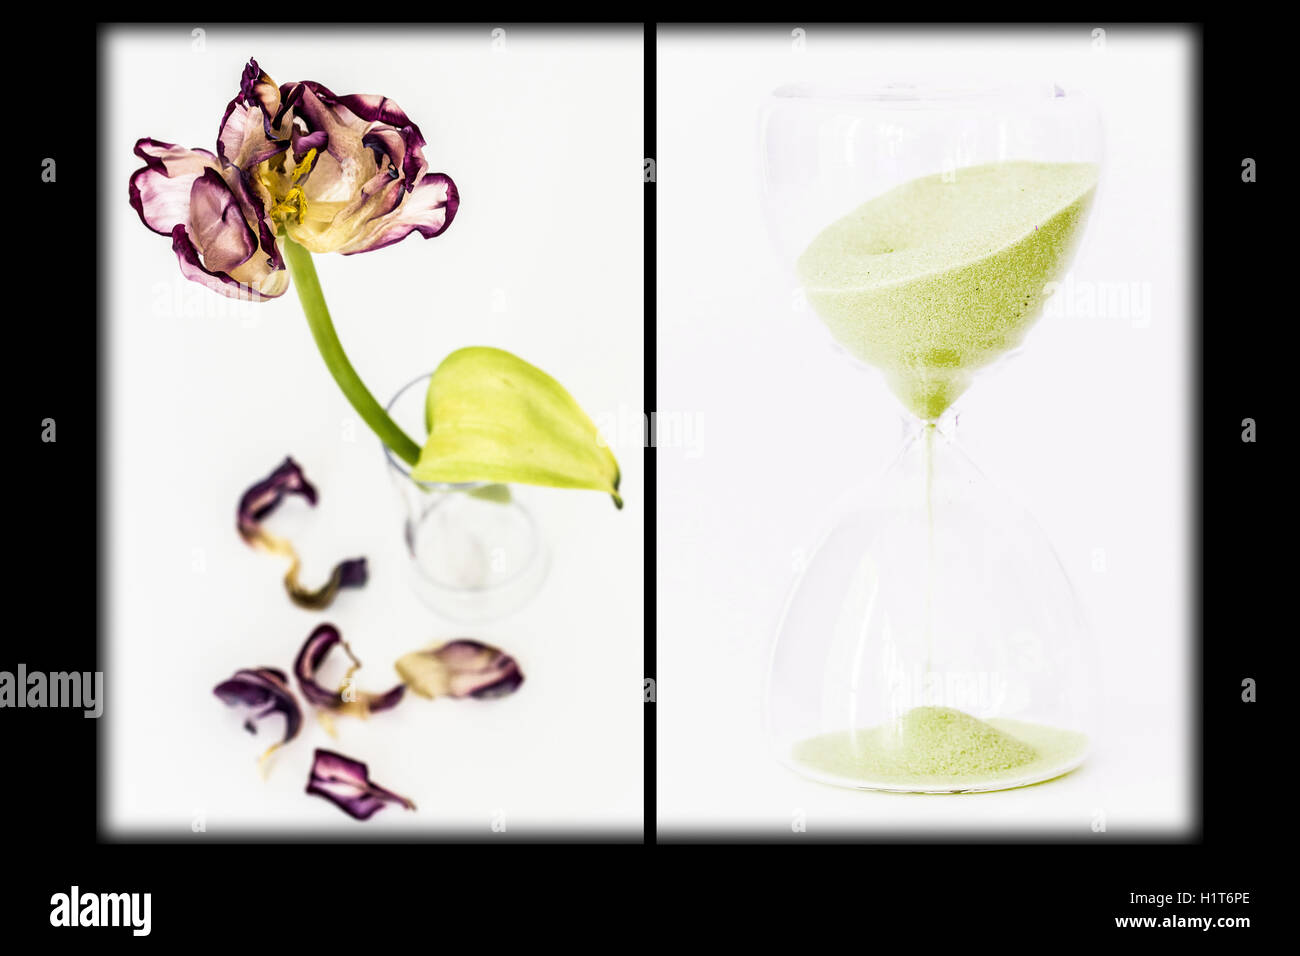 Immagine composita di una clessidra ed un fiore appassito. Immagine concettuale di invecchiamento. Foto Stock